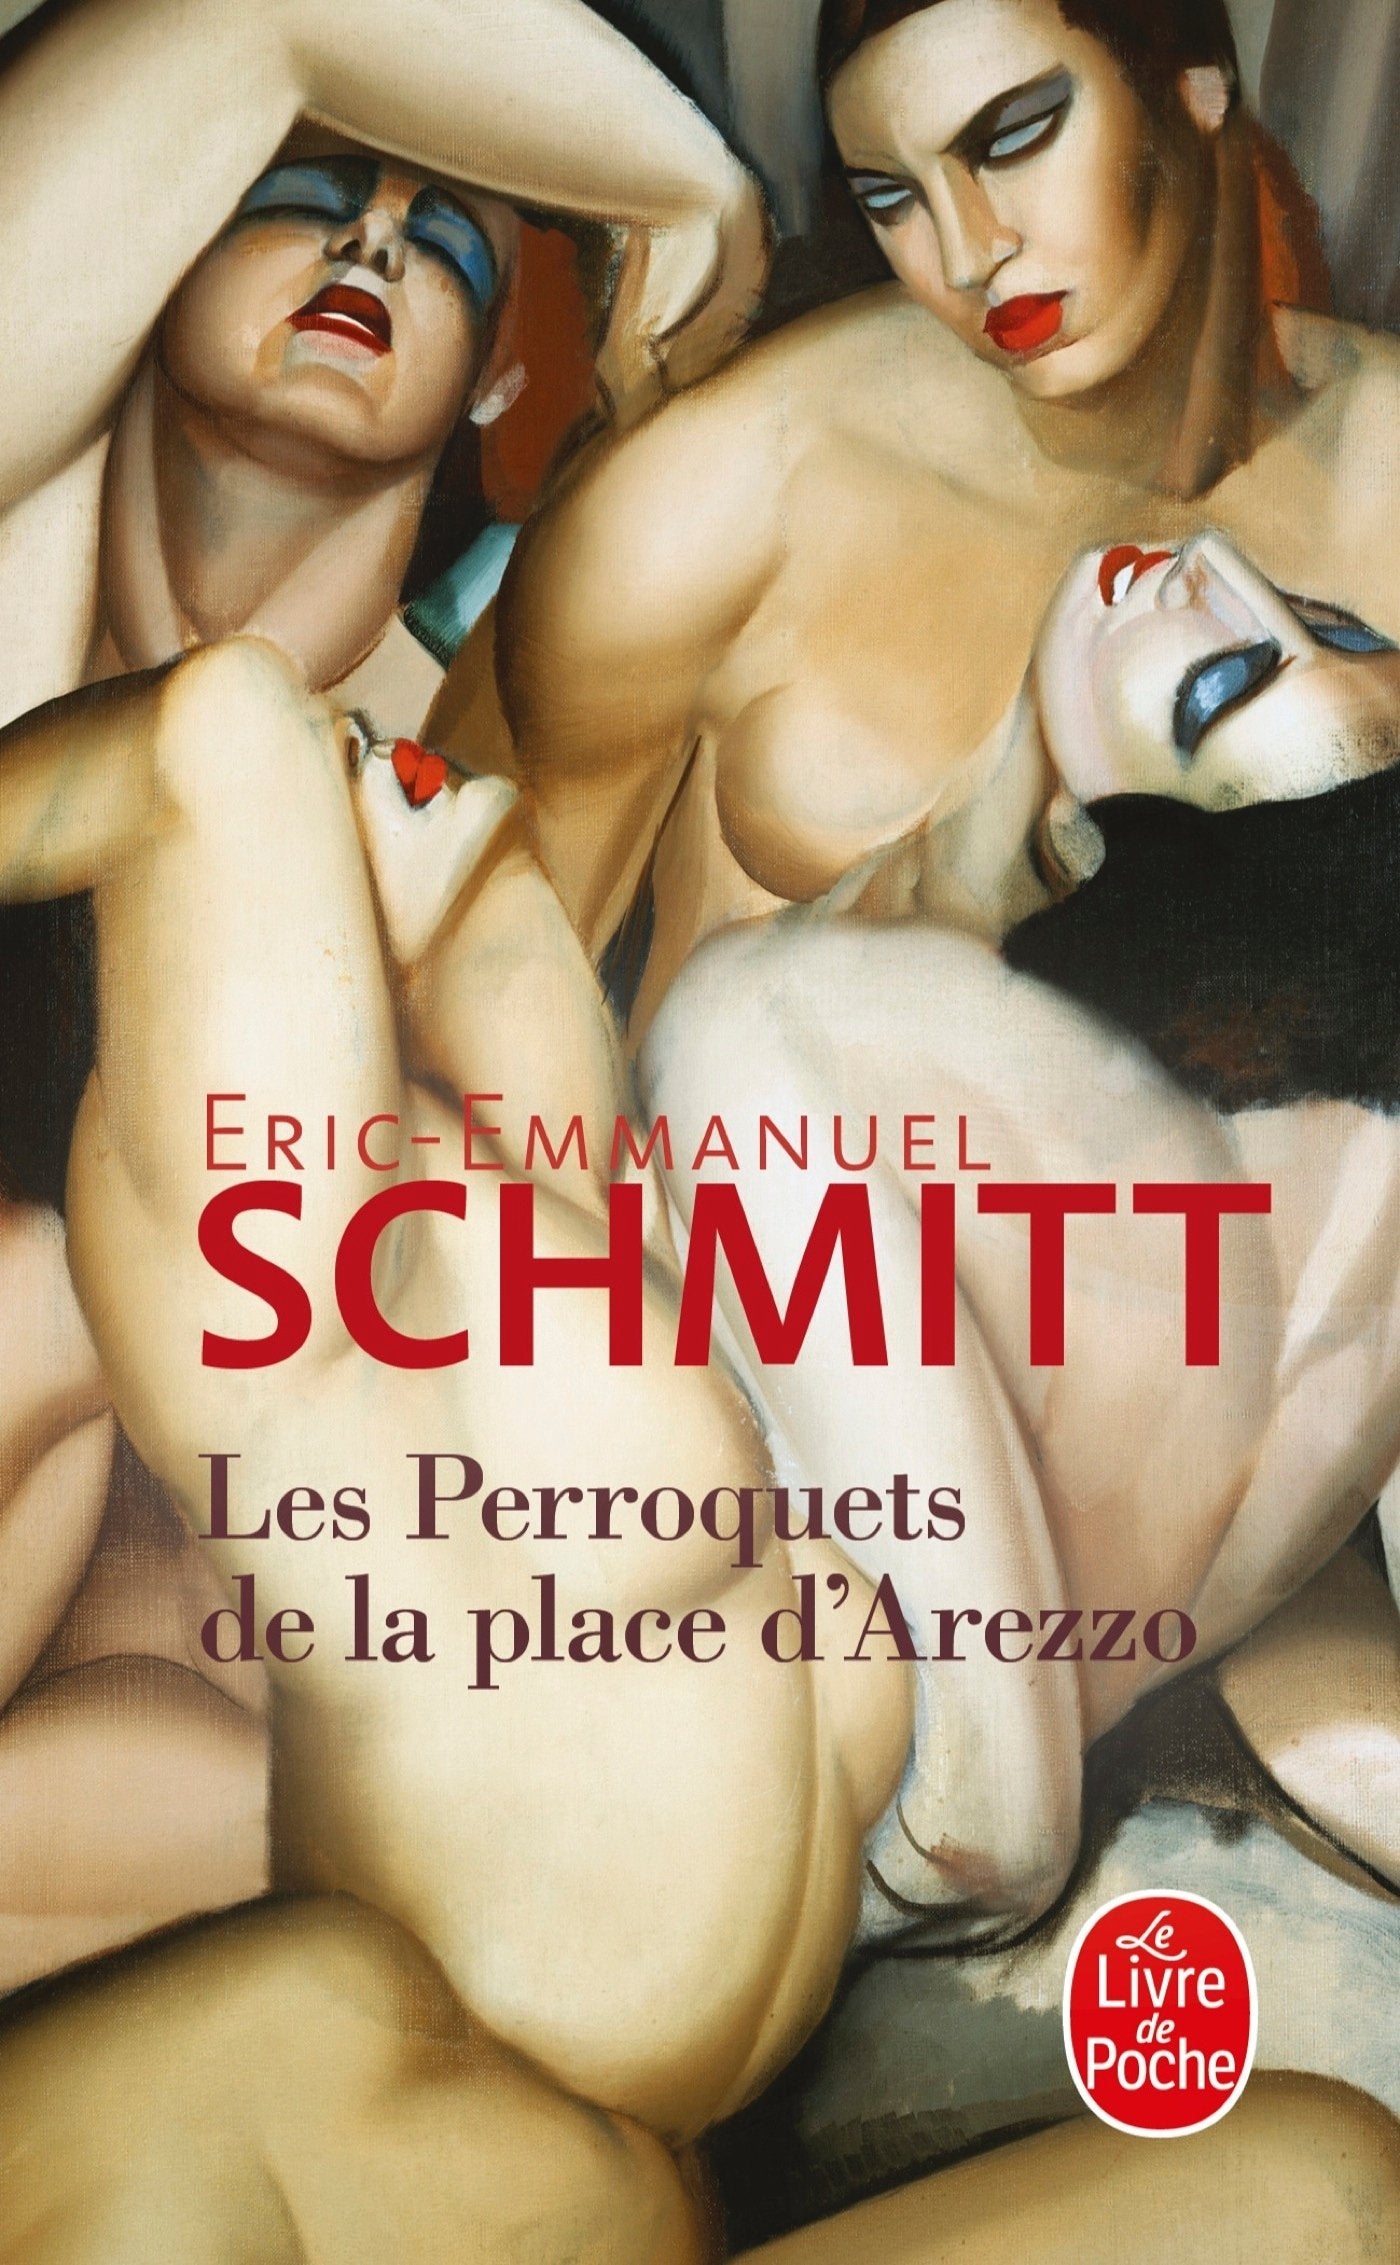 Livre ISBN 2253087327 Les perroquets de la place d'Arezzo (Eric-Emmanuel Schmitt)